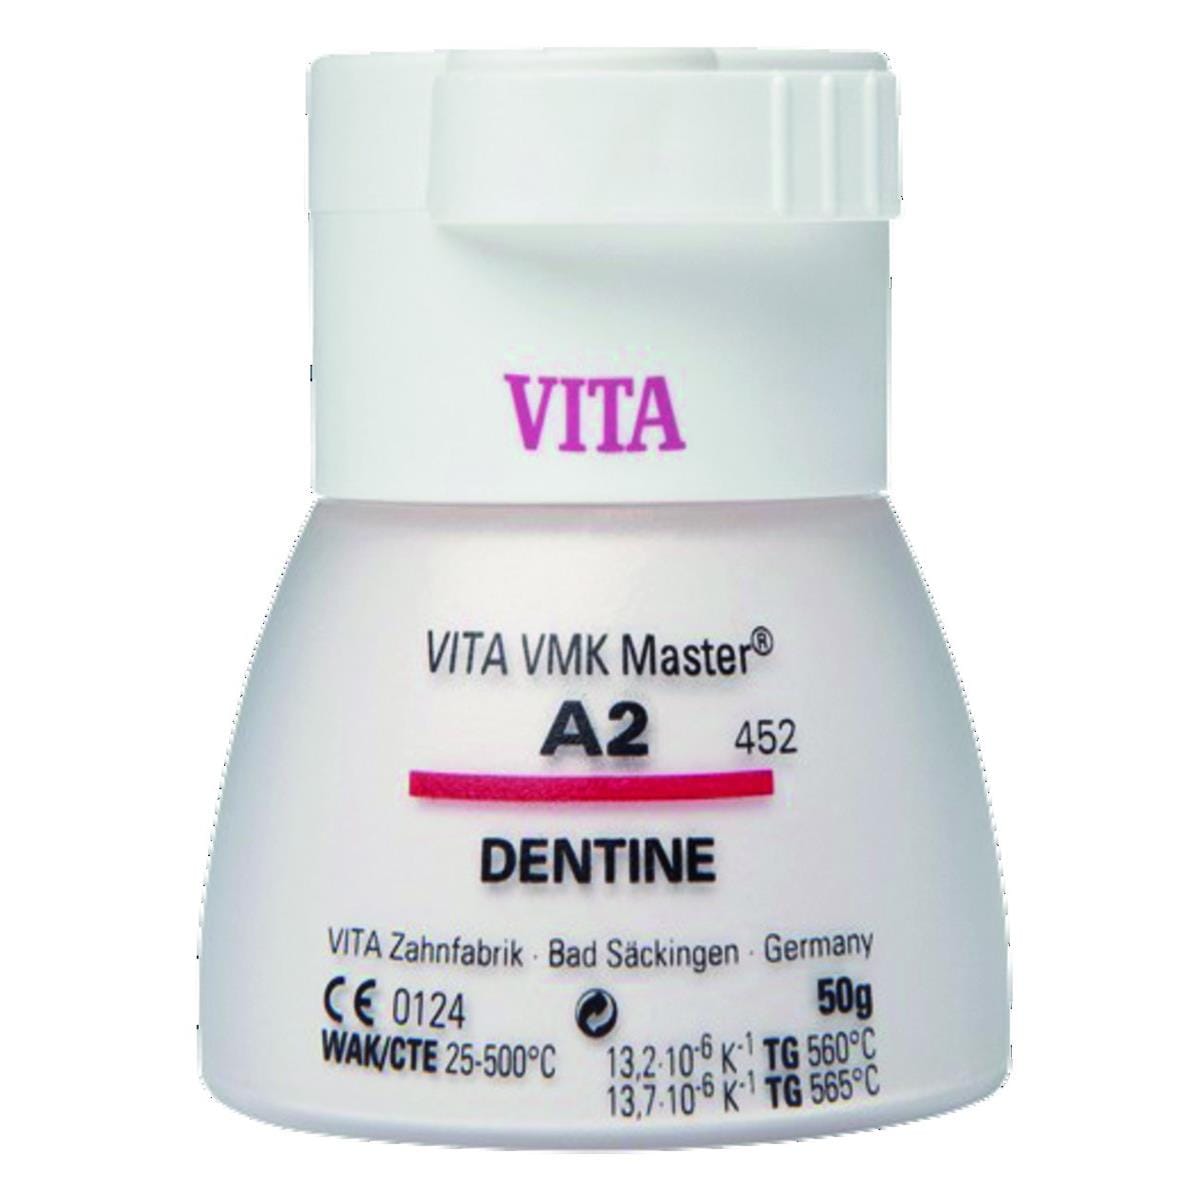 VMK Master VITA - Dentine - 0M2 - Le flacon de 50 g